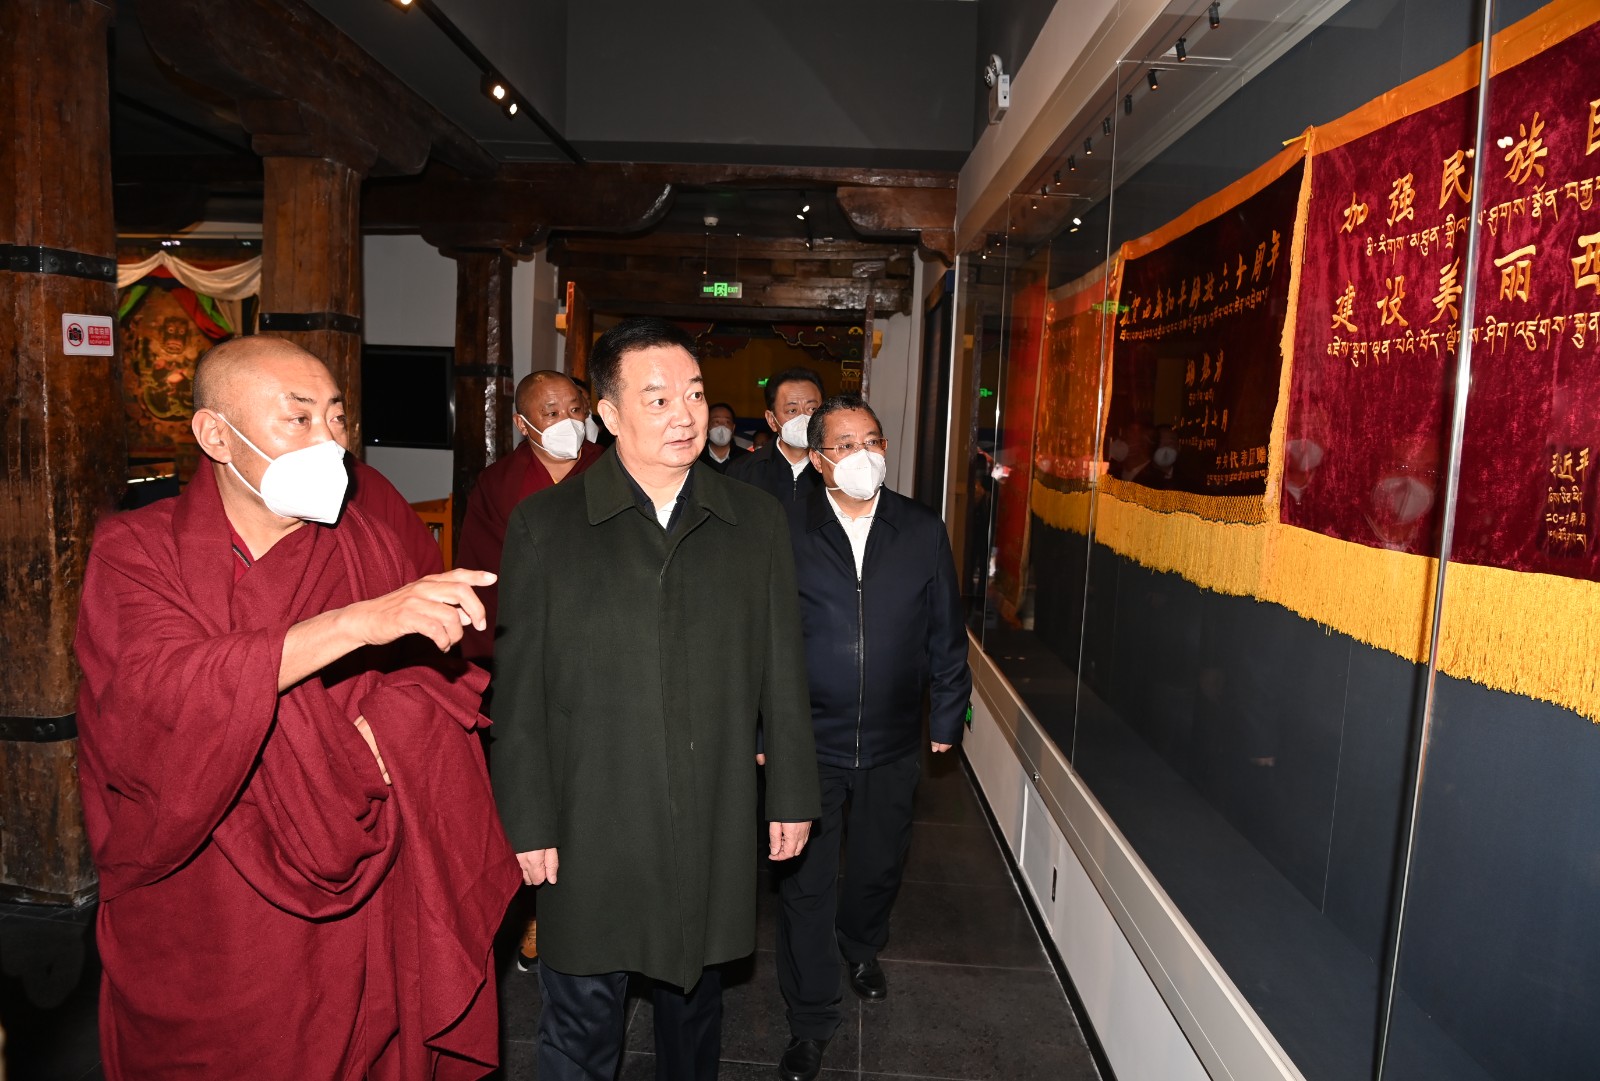 王君正在拉薩市調研督導時強調 團結一心 共同奮斗 再接再厲 努力開創社會主義現代化新西藏建設新局面